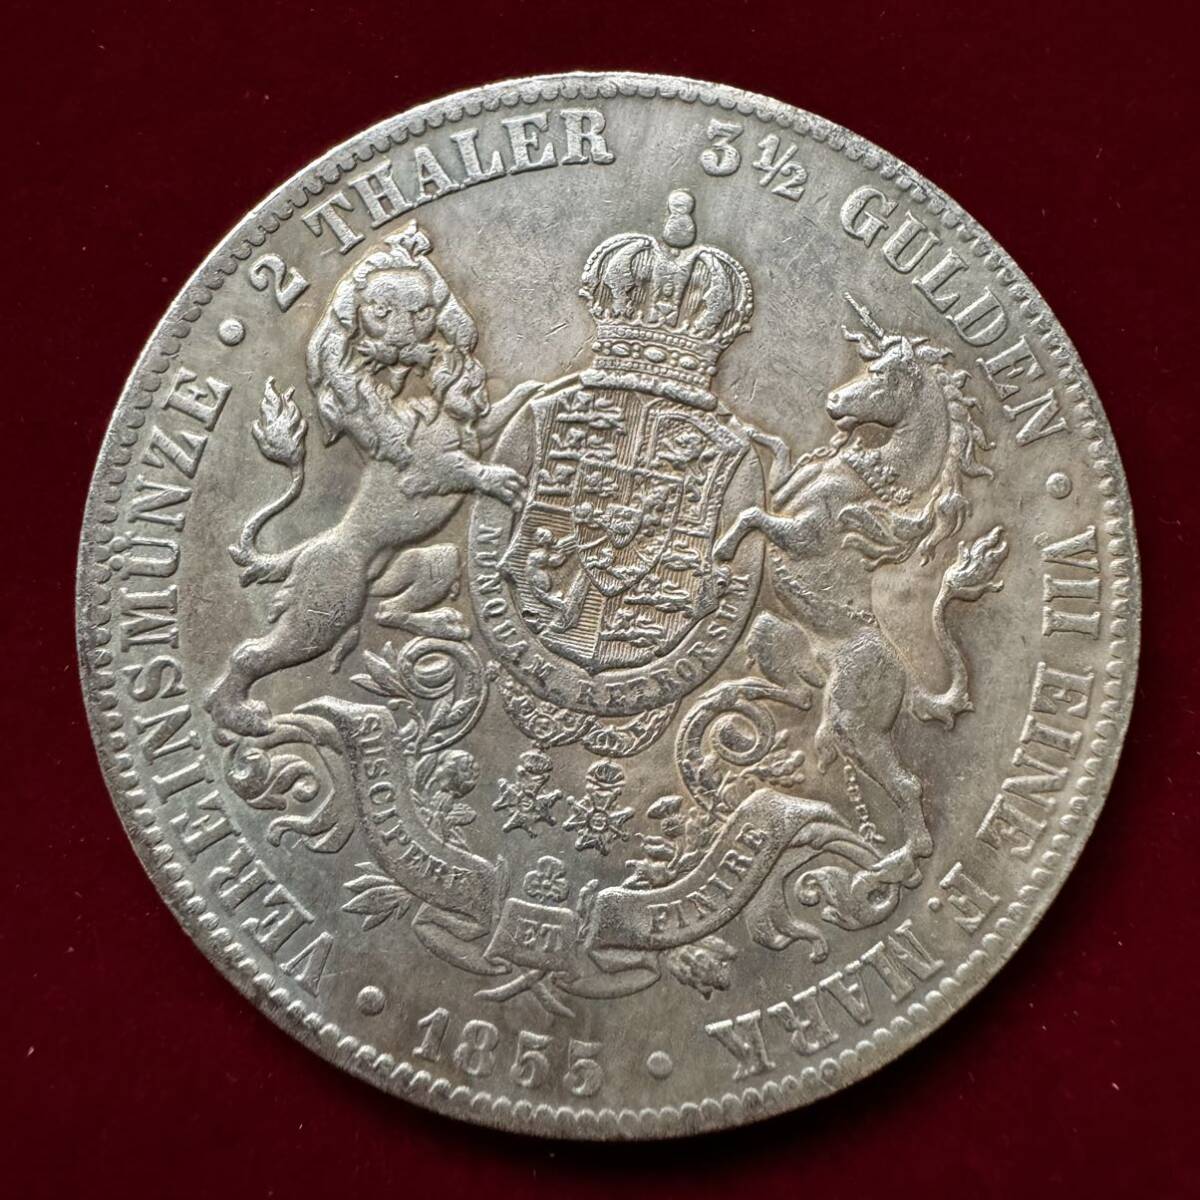 イギリス ヴィクトリア女王 硬貨 古銭 1887年 「MDCCCLXXXVII」銘 王章 国花 ライオン ユニコーン クラウン コイン 銀貨 外国古銭 海外硬貨の画像1